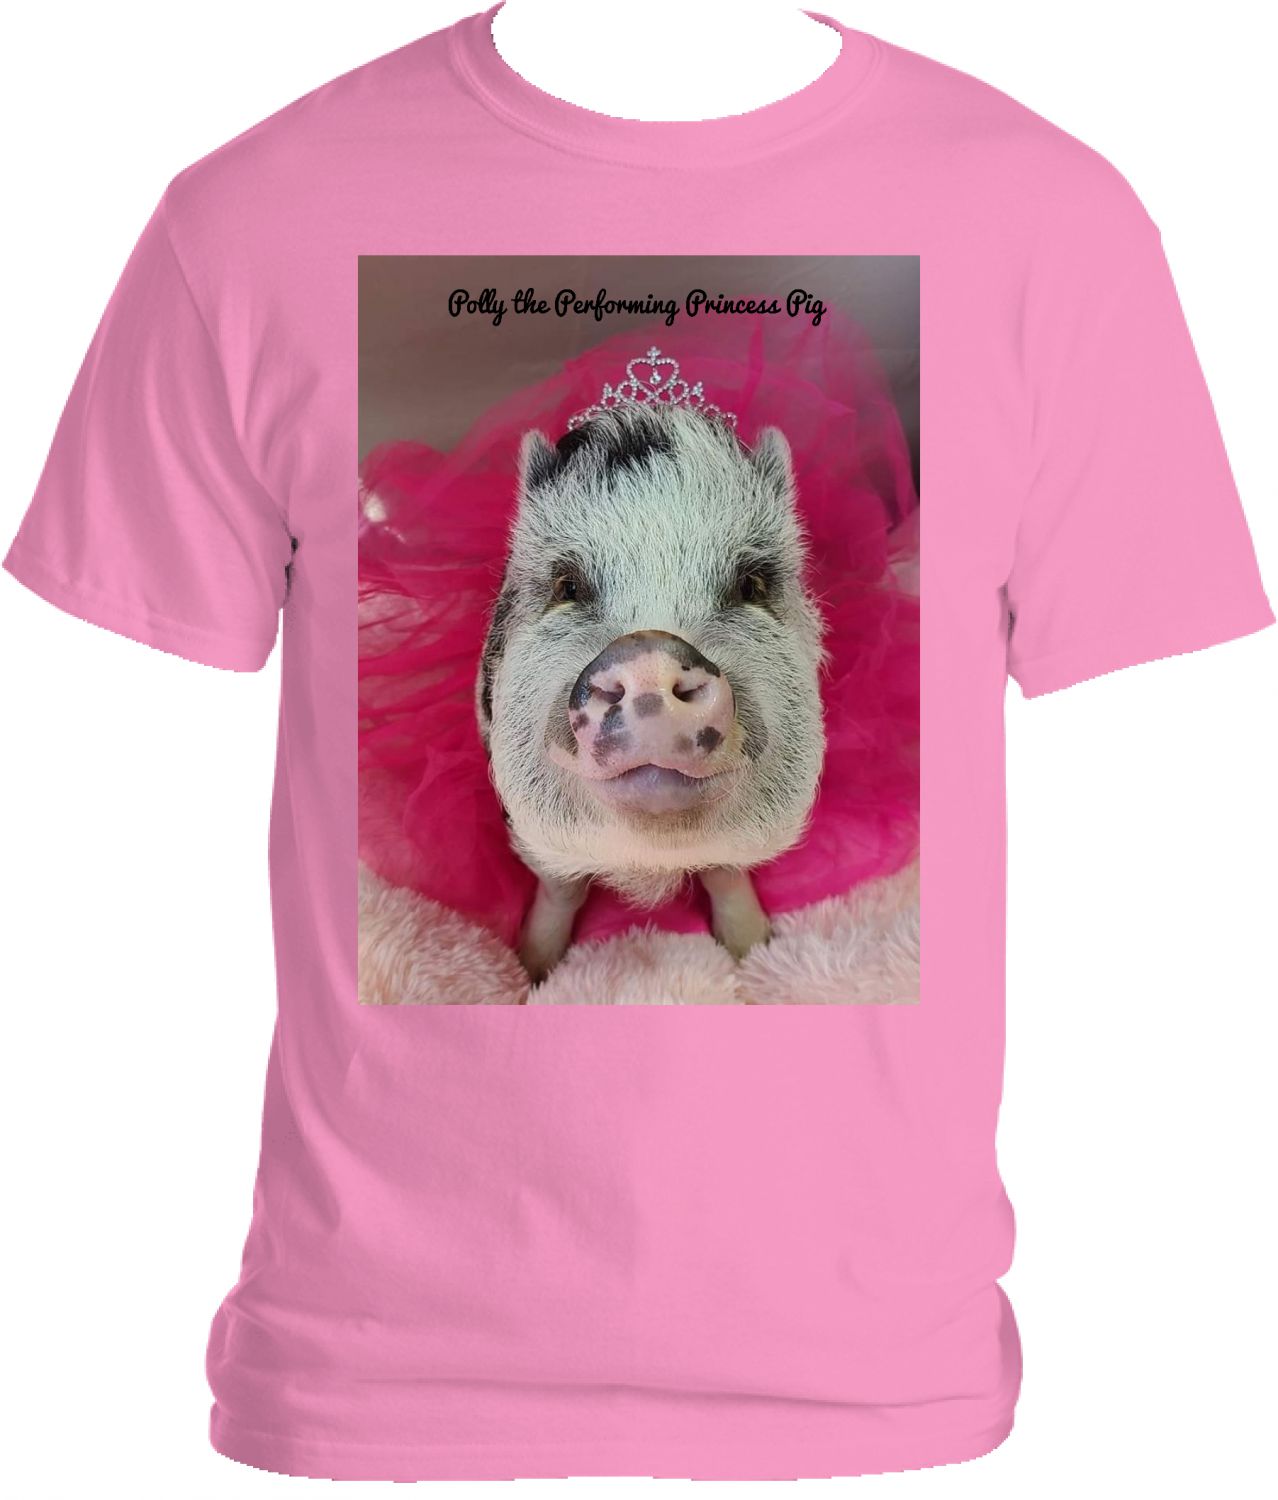 Polly the Performing Princess Pig shirts